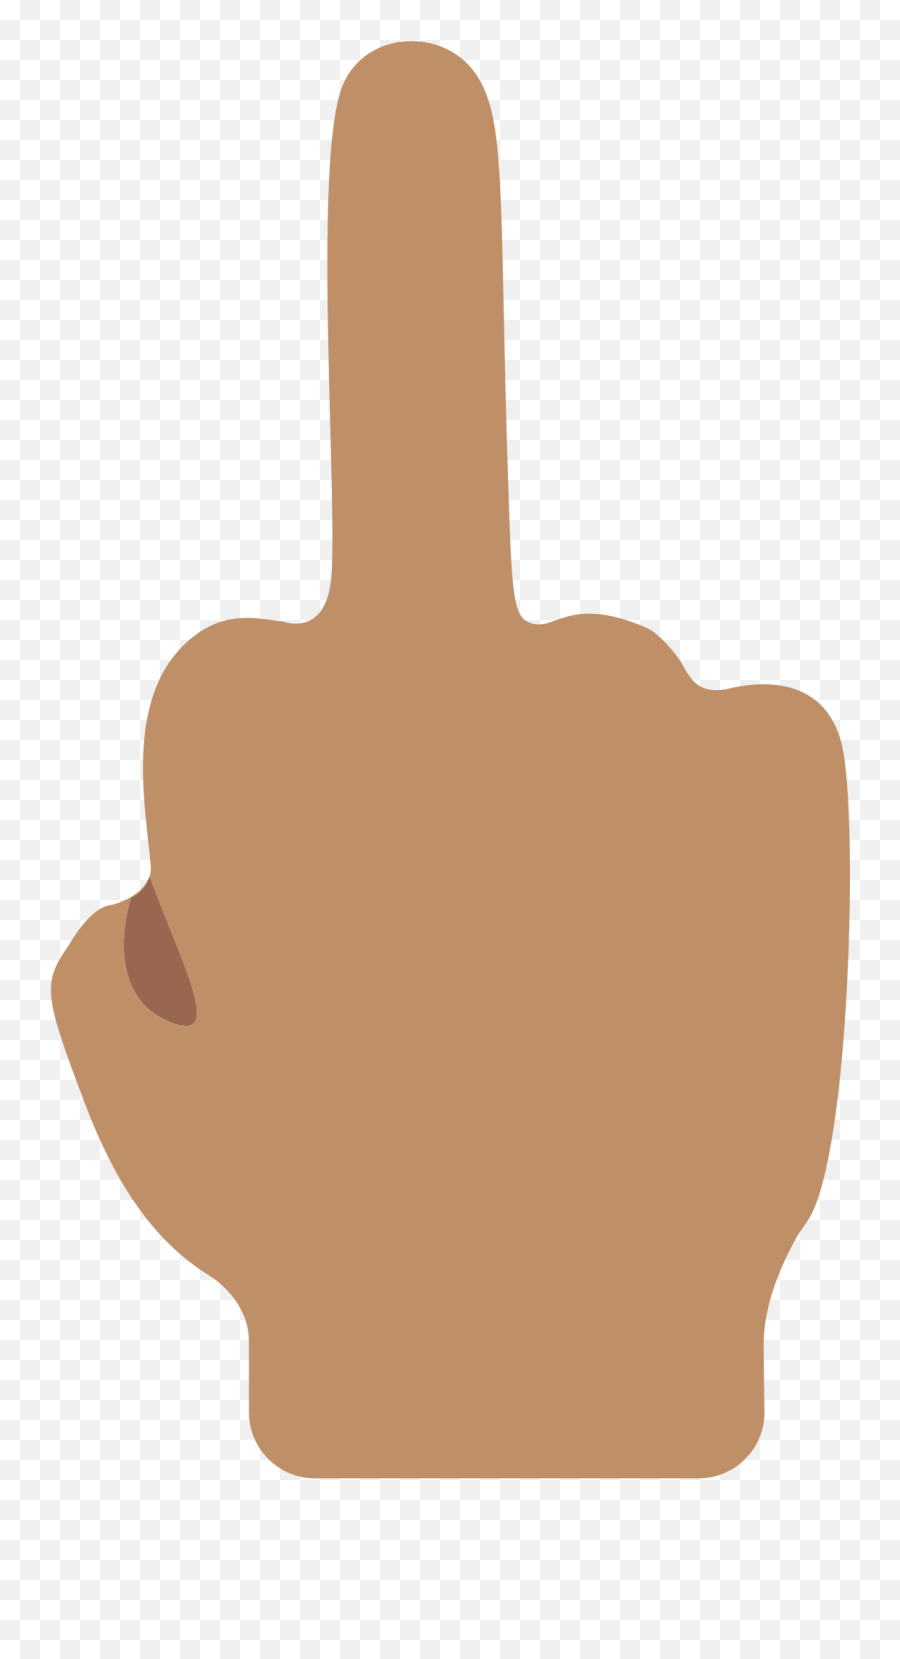 Middle Finger Emoji Clipart - Middle Finger Transparent Background,Crossing Fingers Emoji